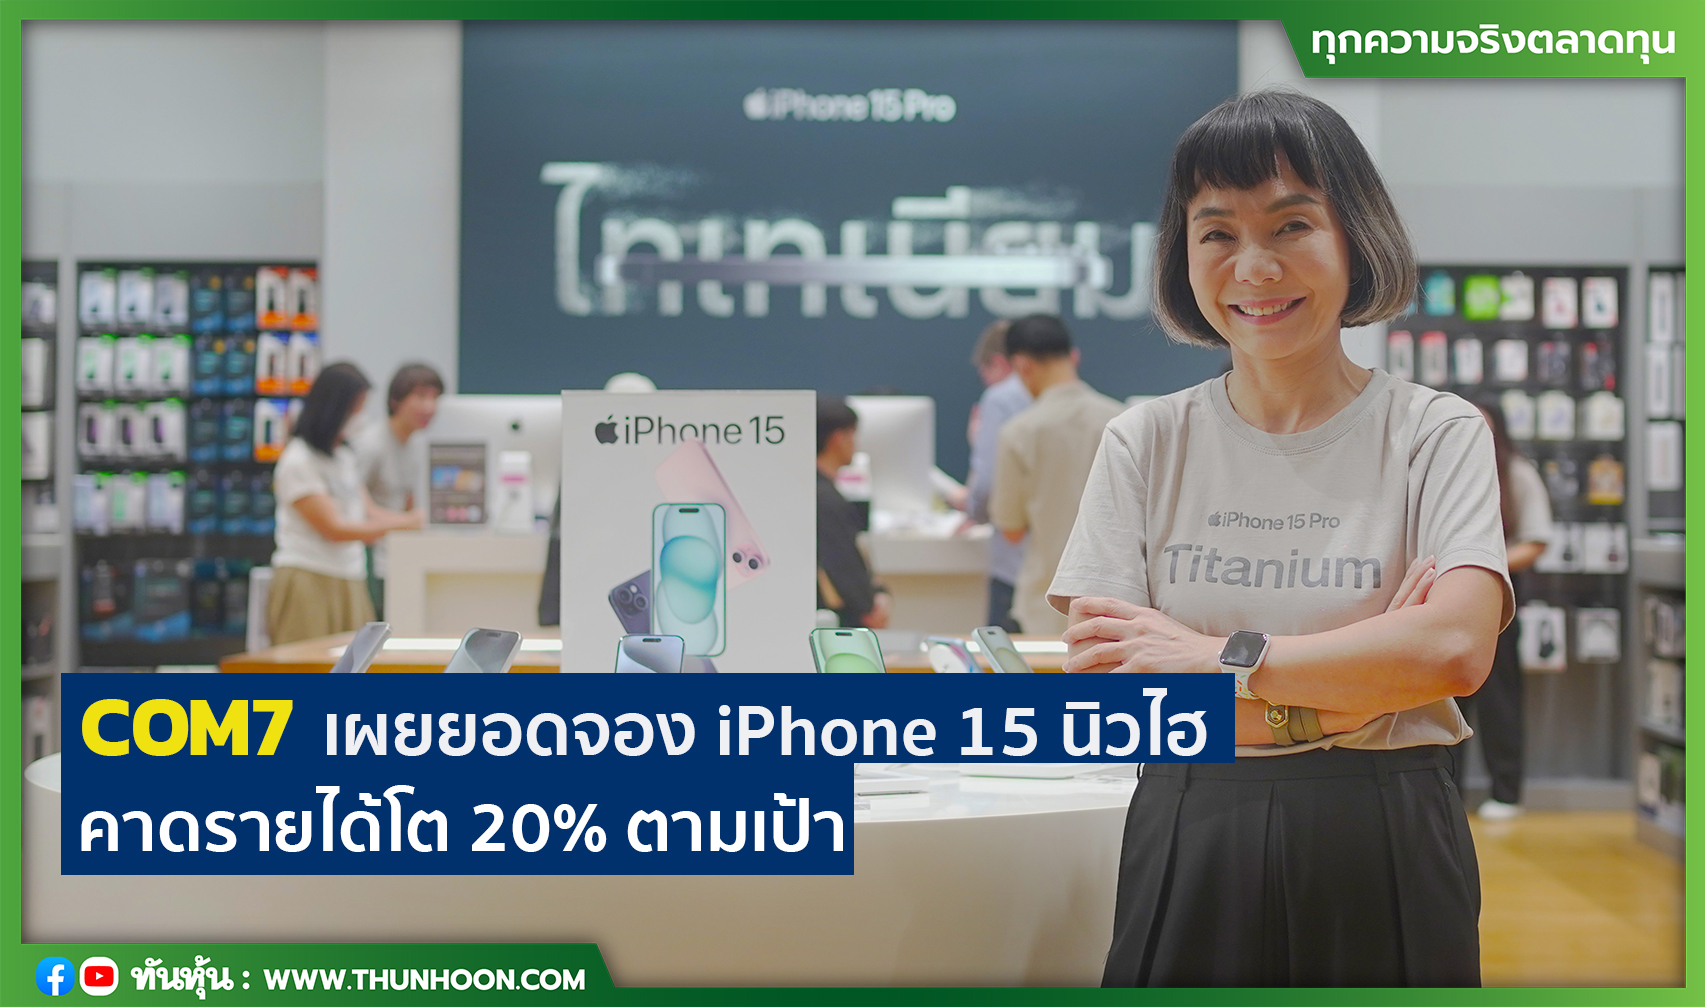 COM7 เผยยอดจอง iPhone 15 นิวไฮ  คาดรายได้โต 20% ตามเป้า